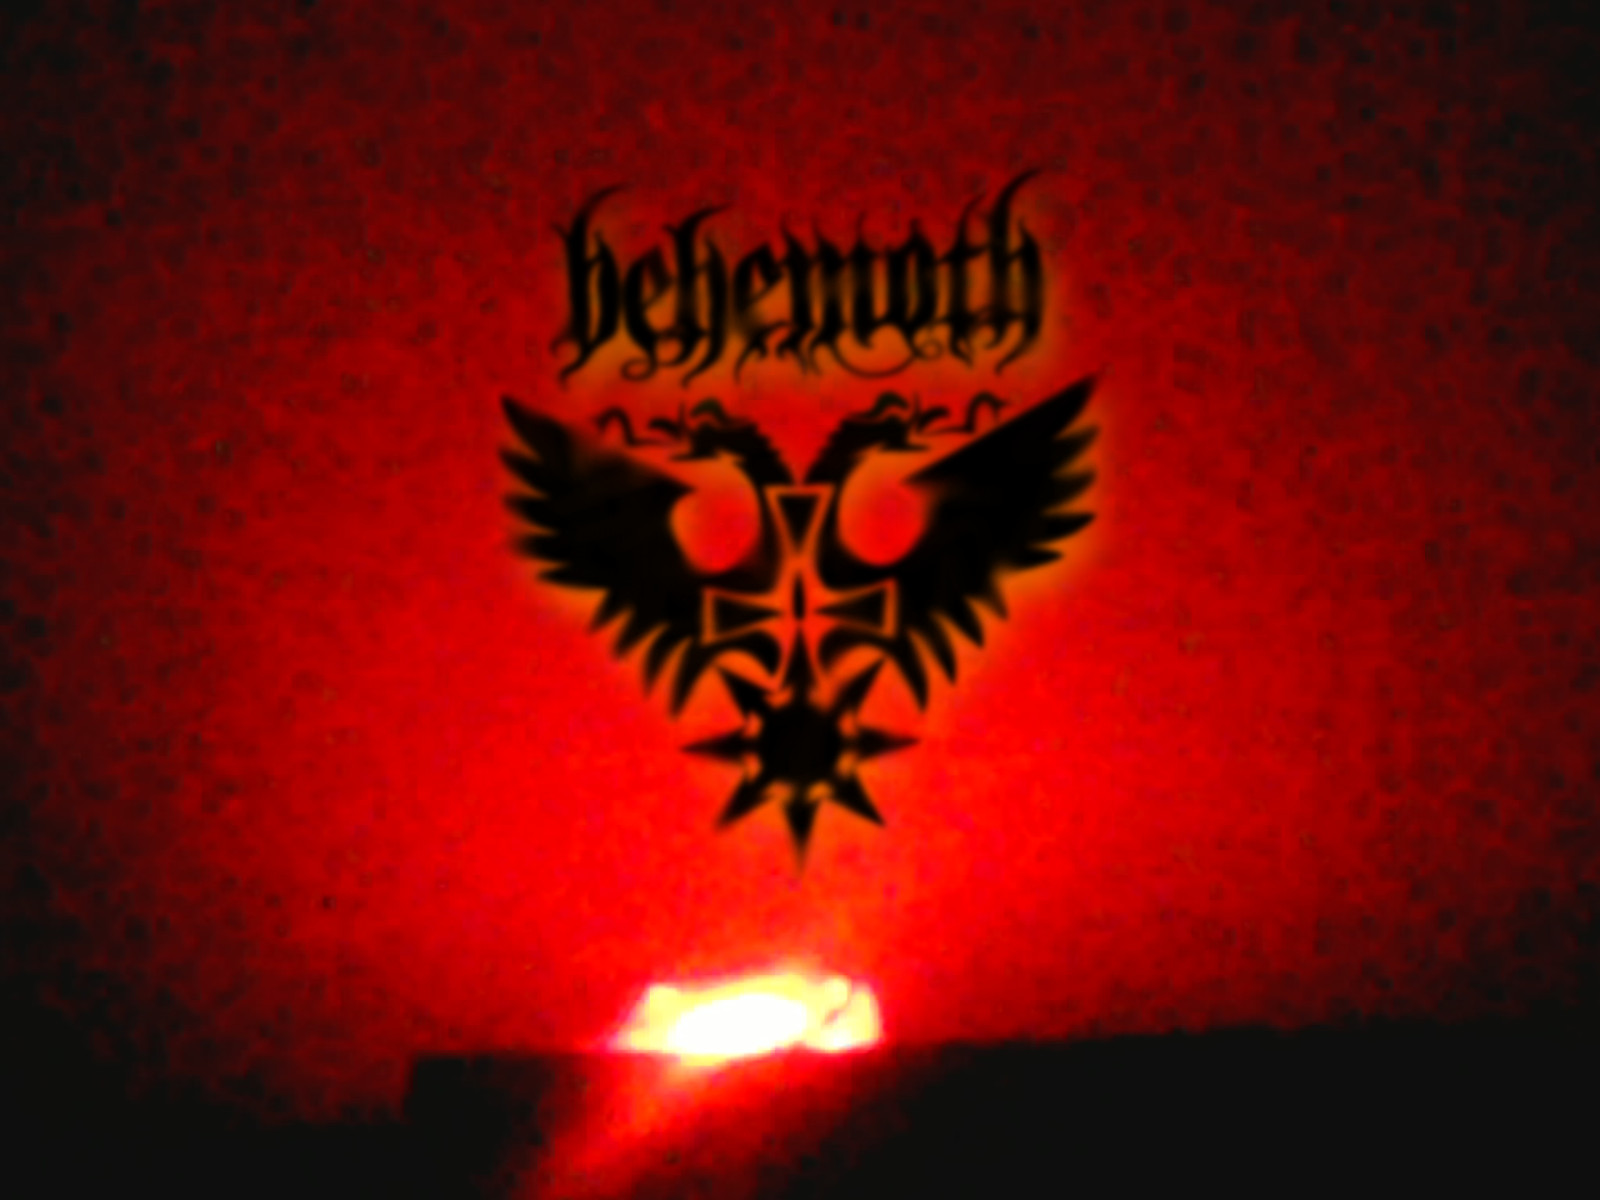 Behemoth by Luke_Exorcist